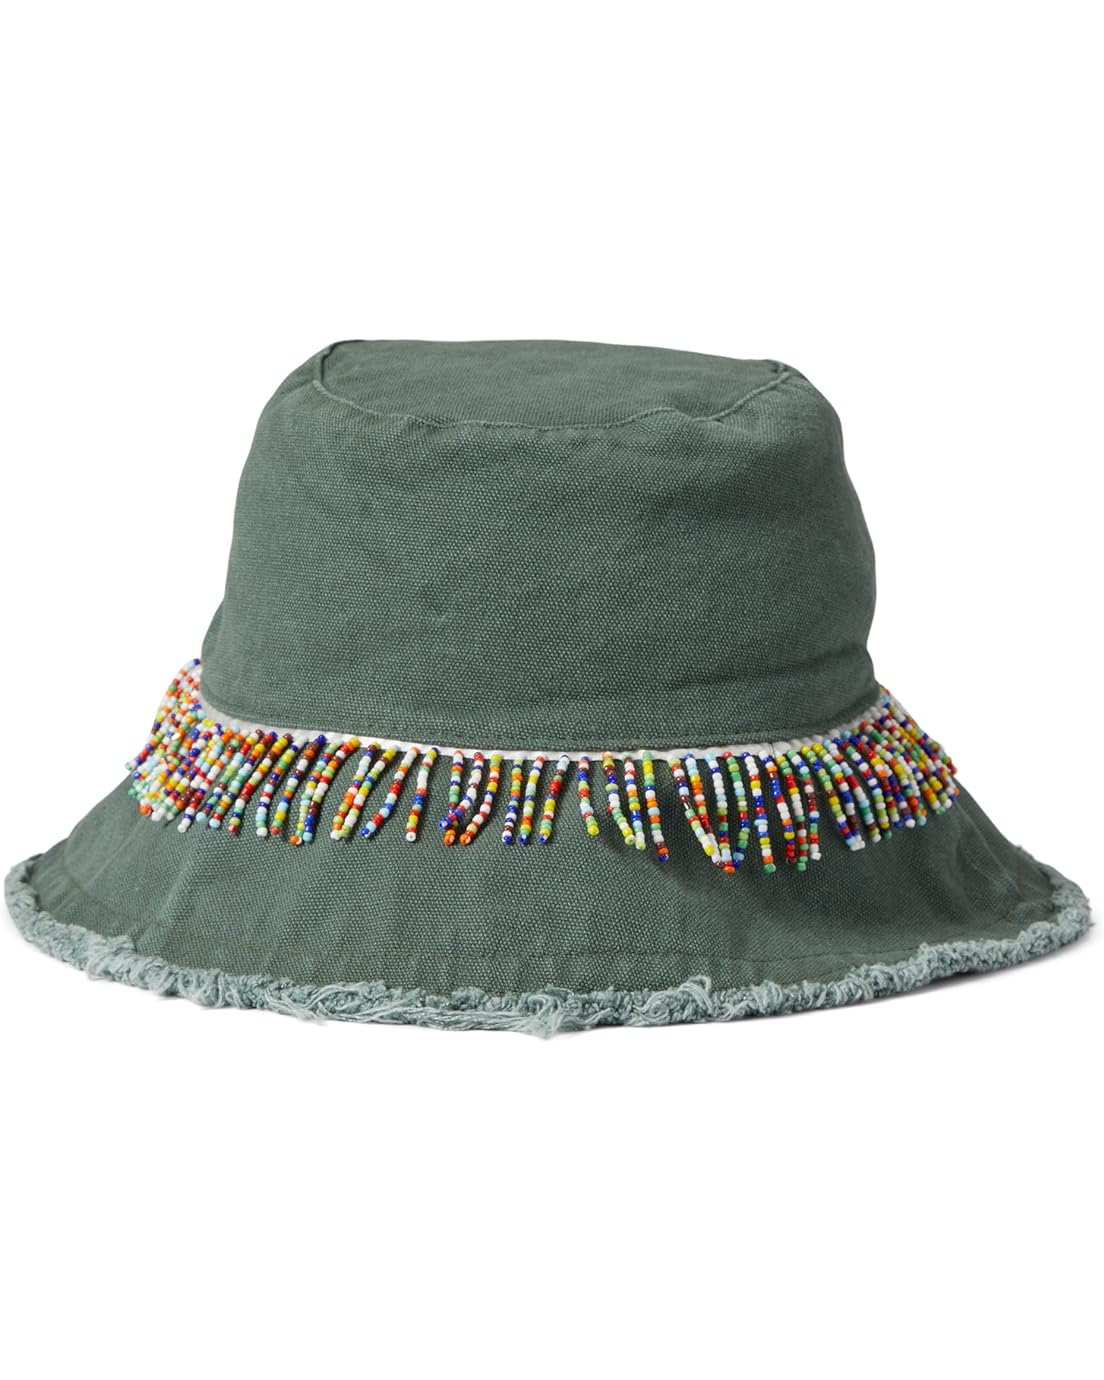 Badgley Mischka Woven Bucket Hat with Beaded Trim